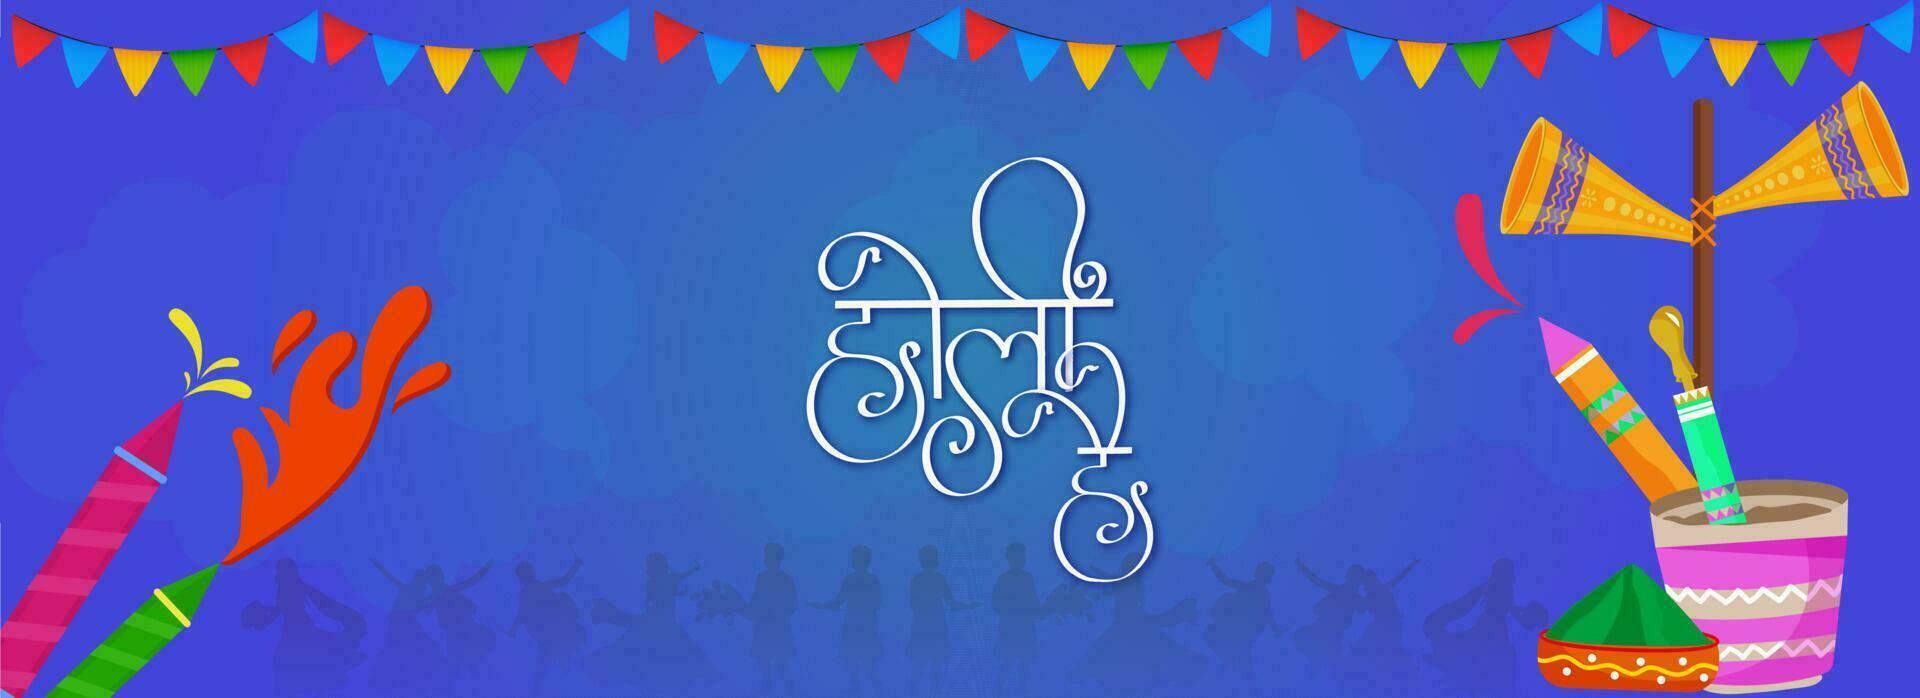 hindi text av dess holi med vatten vapen, hink, torr Färg i skål, högtalare och flaggväv flagga på blå bakgrund. vektor